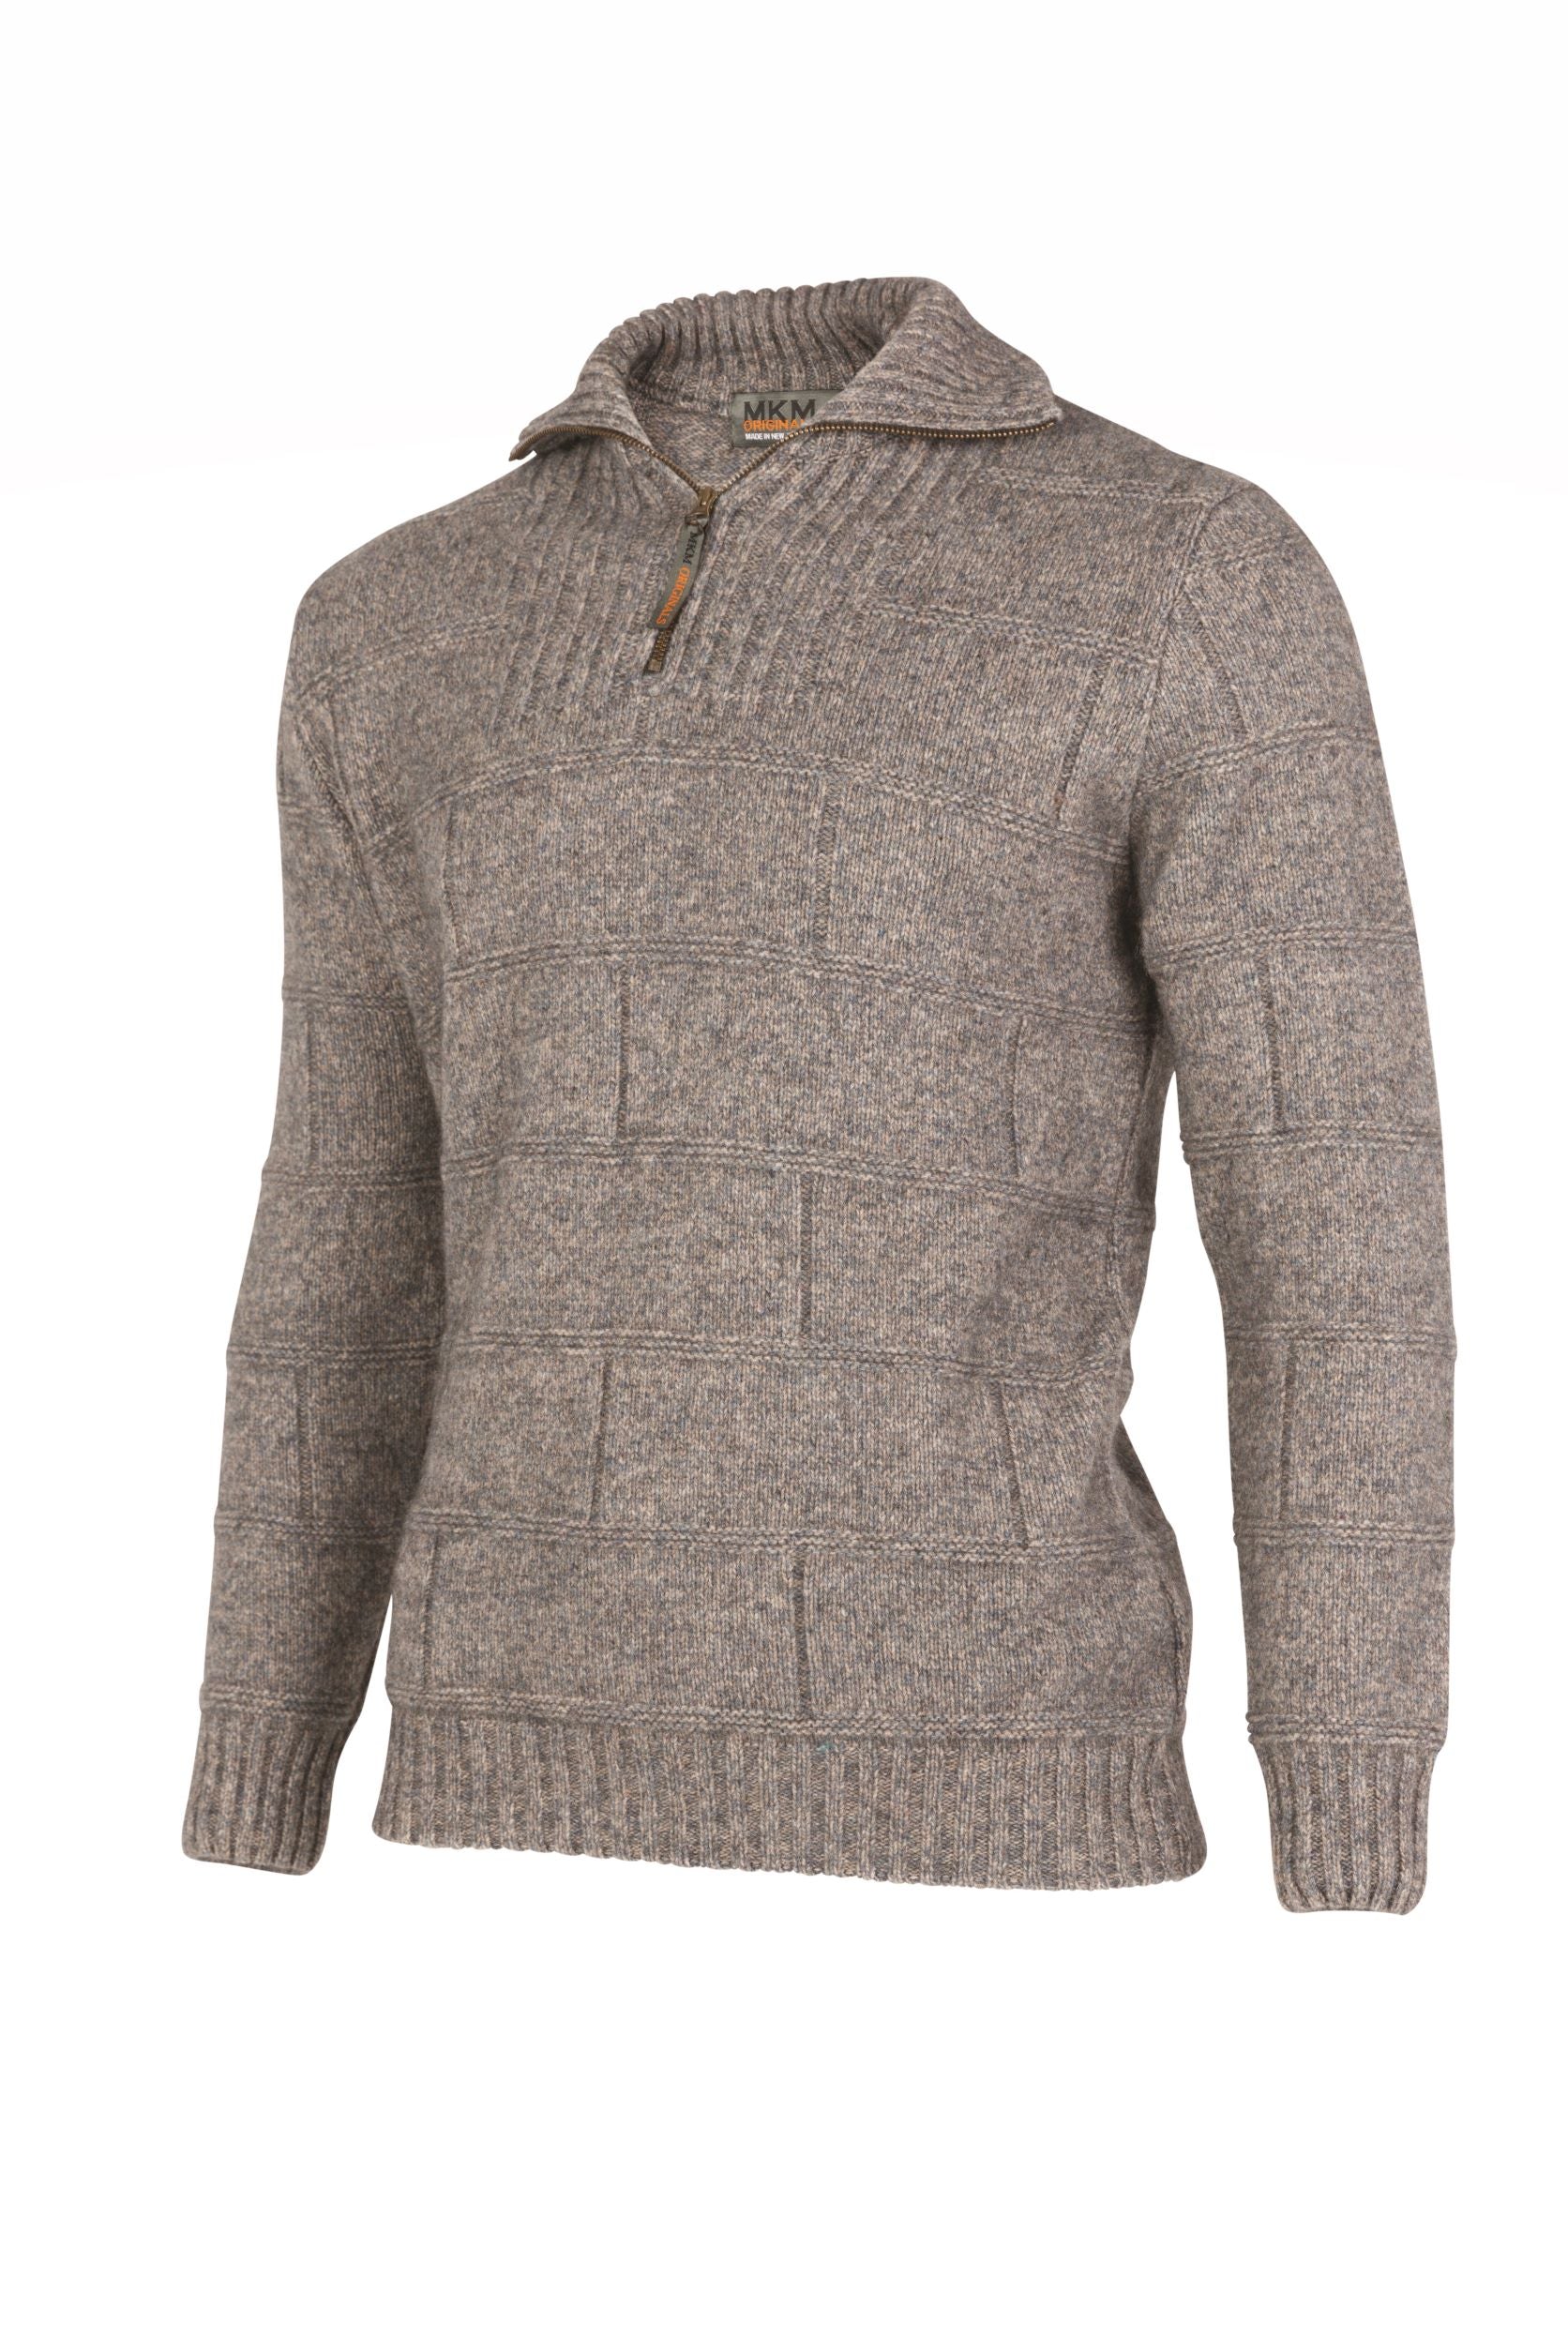 Possum Merino Marlborough Zip Sweater - MKM Knitwear